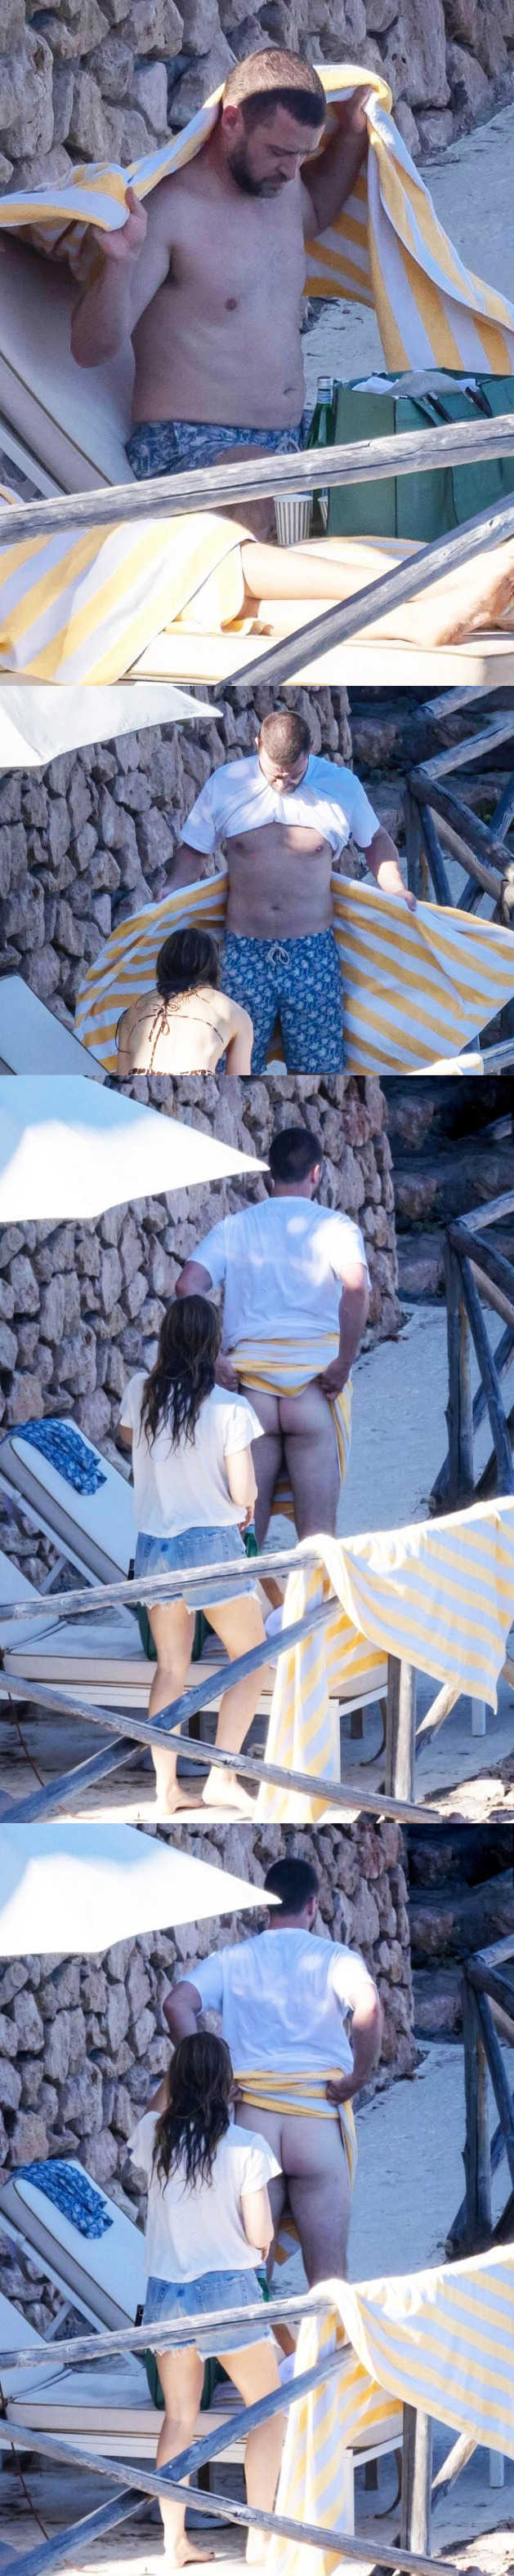 Justin Timberlake caught stripping naked